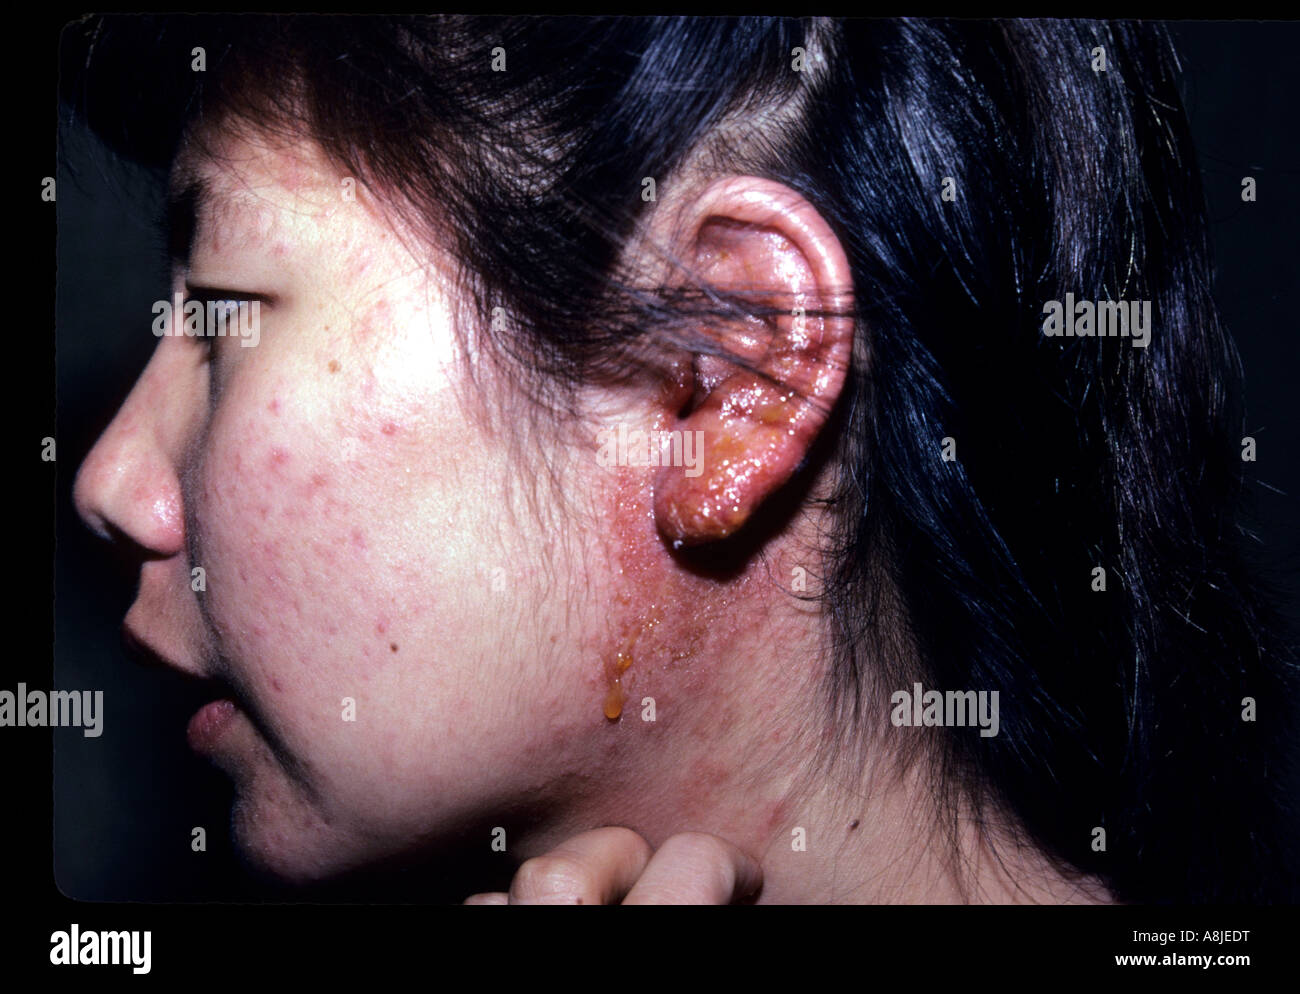 La dermatite da contatto a causa di una reazione allergica per i metalli nella sua orecchini. Foto Stock